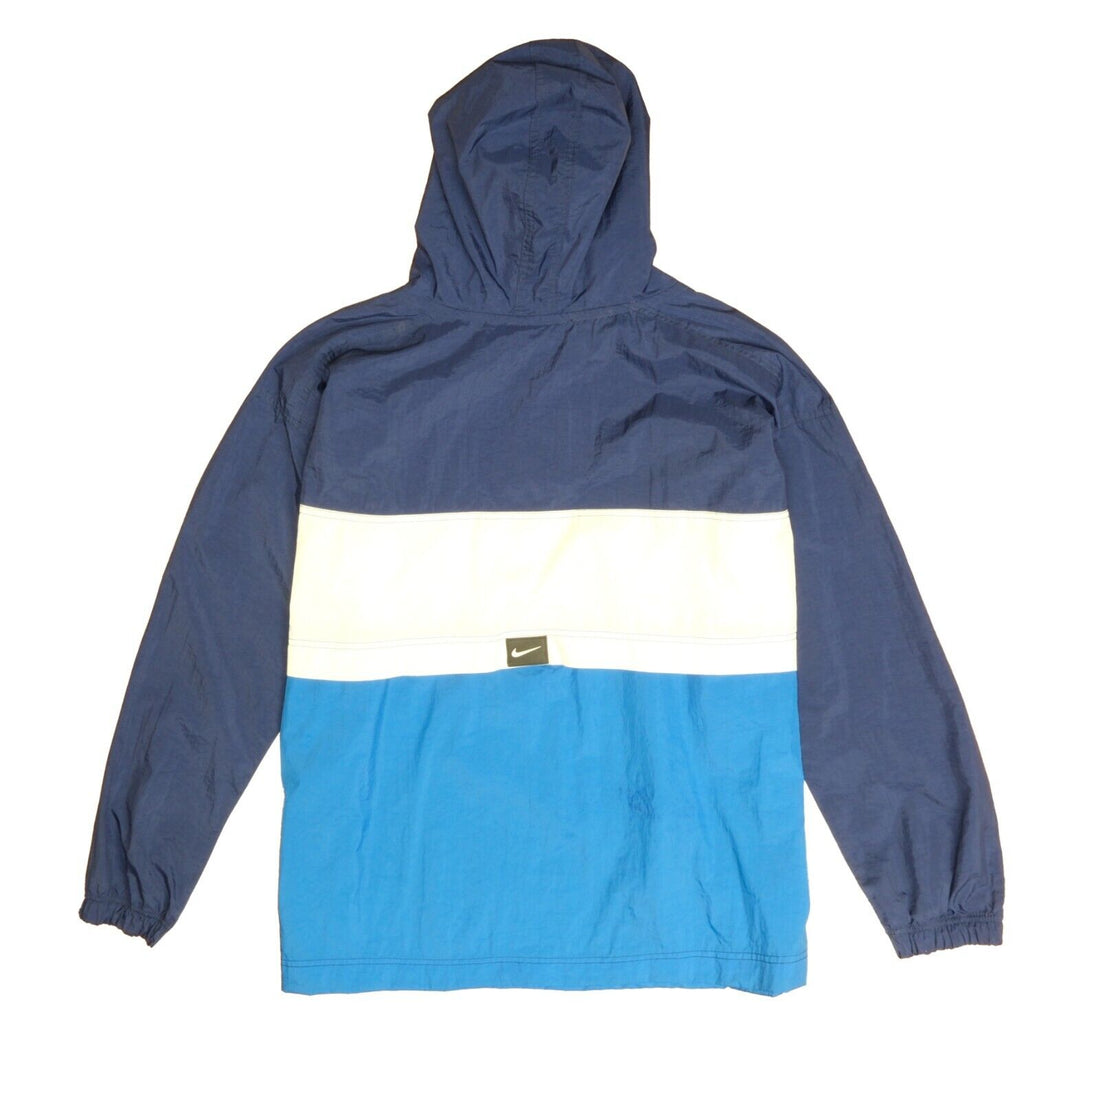 Vintage Nike Anorak Windbreaker Light Jacket Size XL Blue Hooded